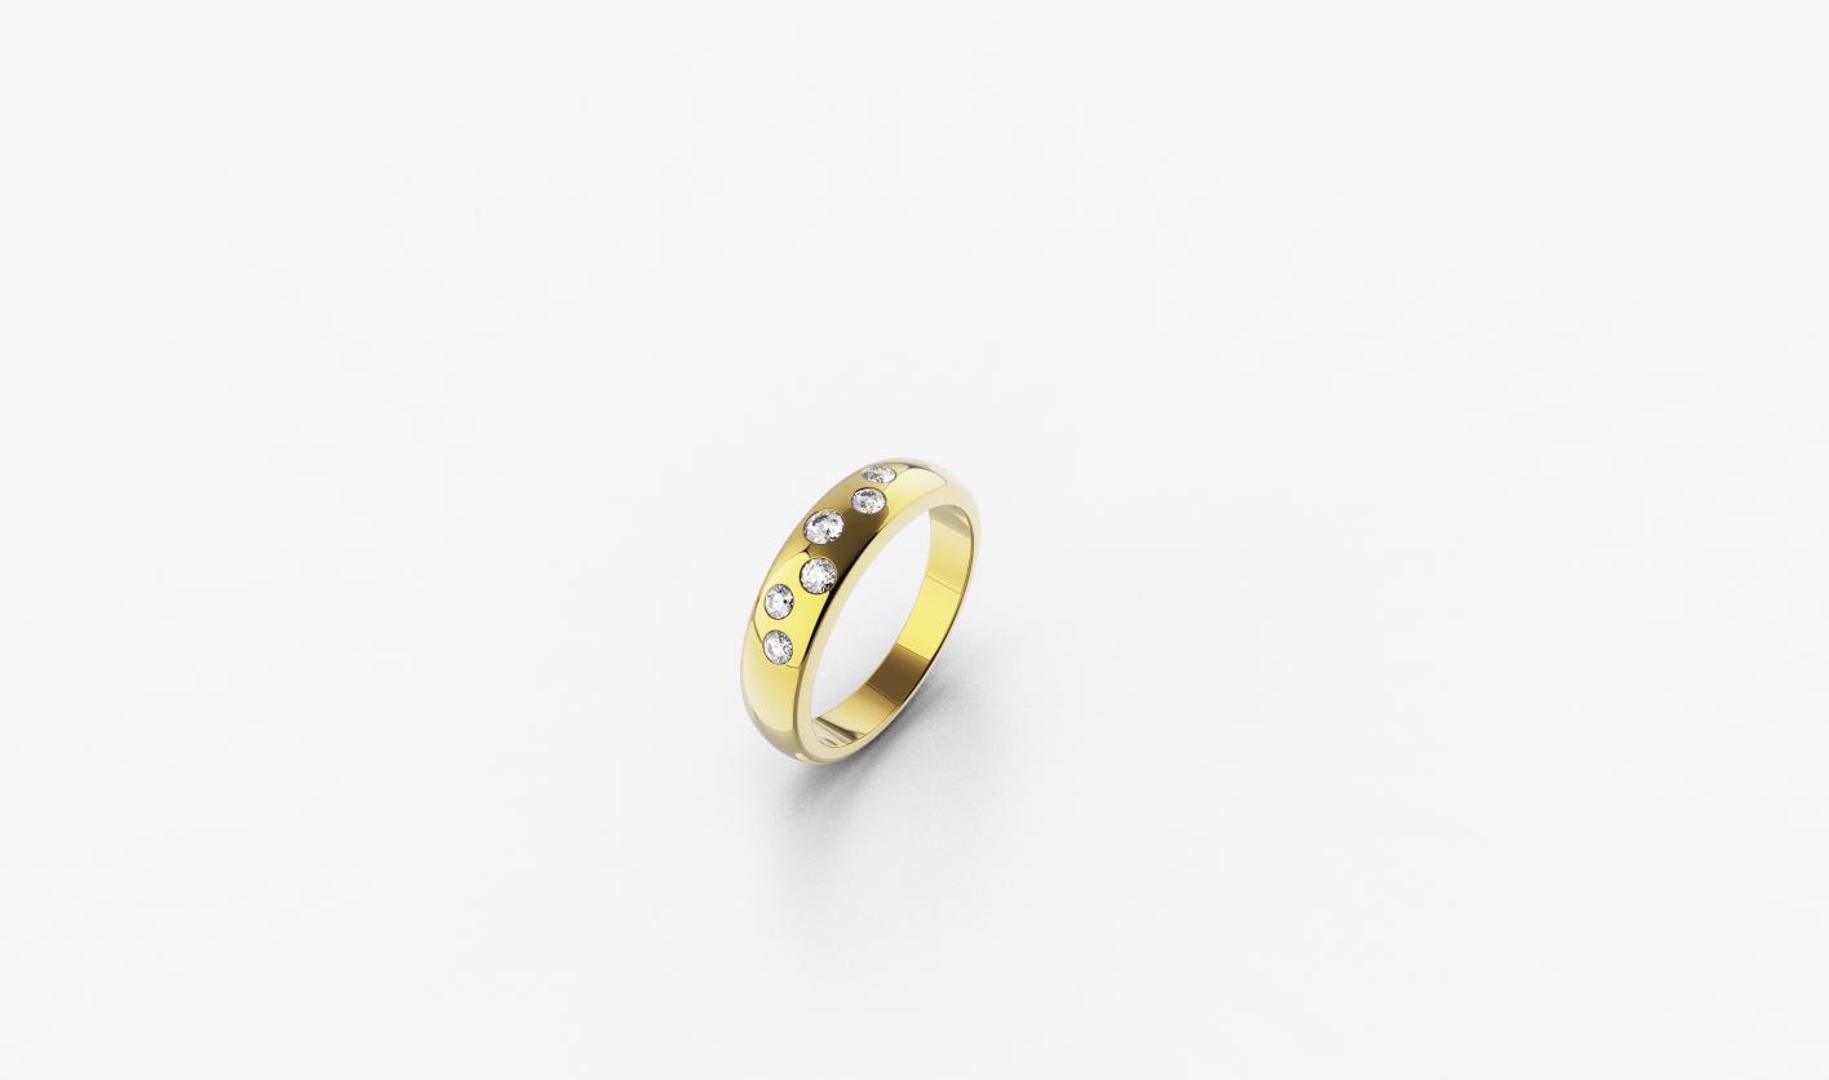 Zlatni prsten, red.cijena 1035kn, sada 848,25kn - ZAKS